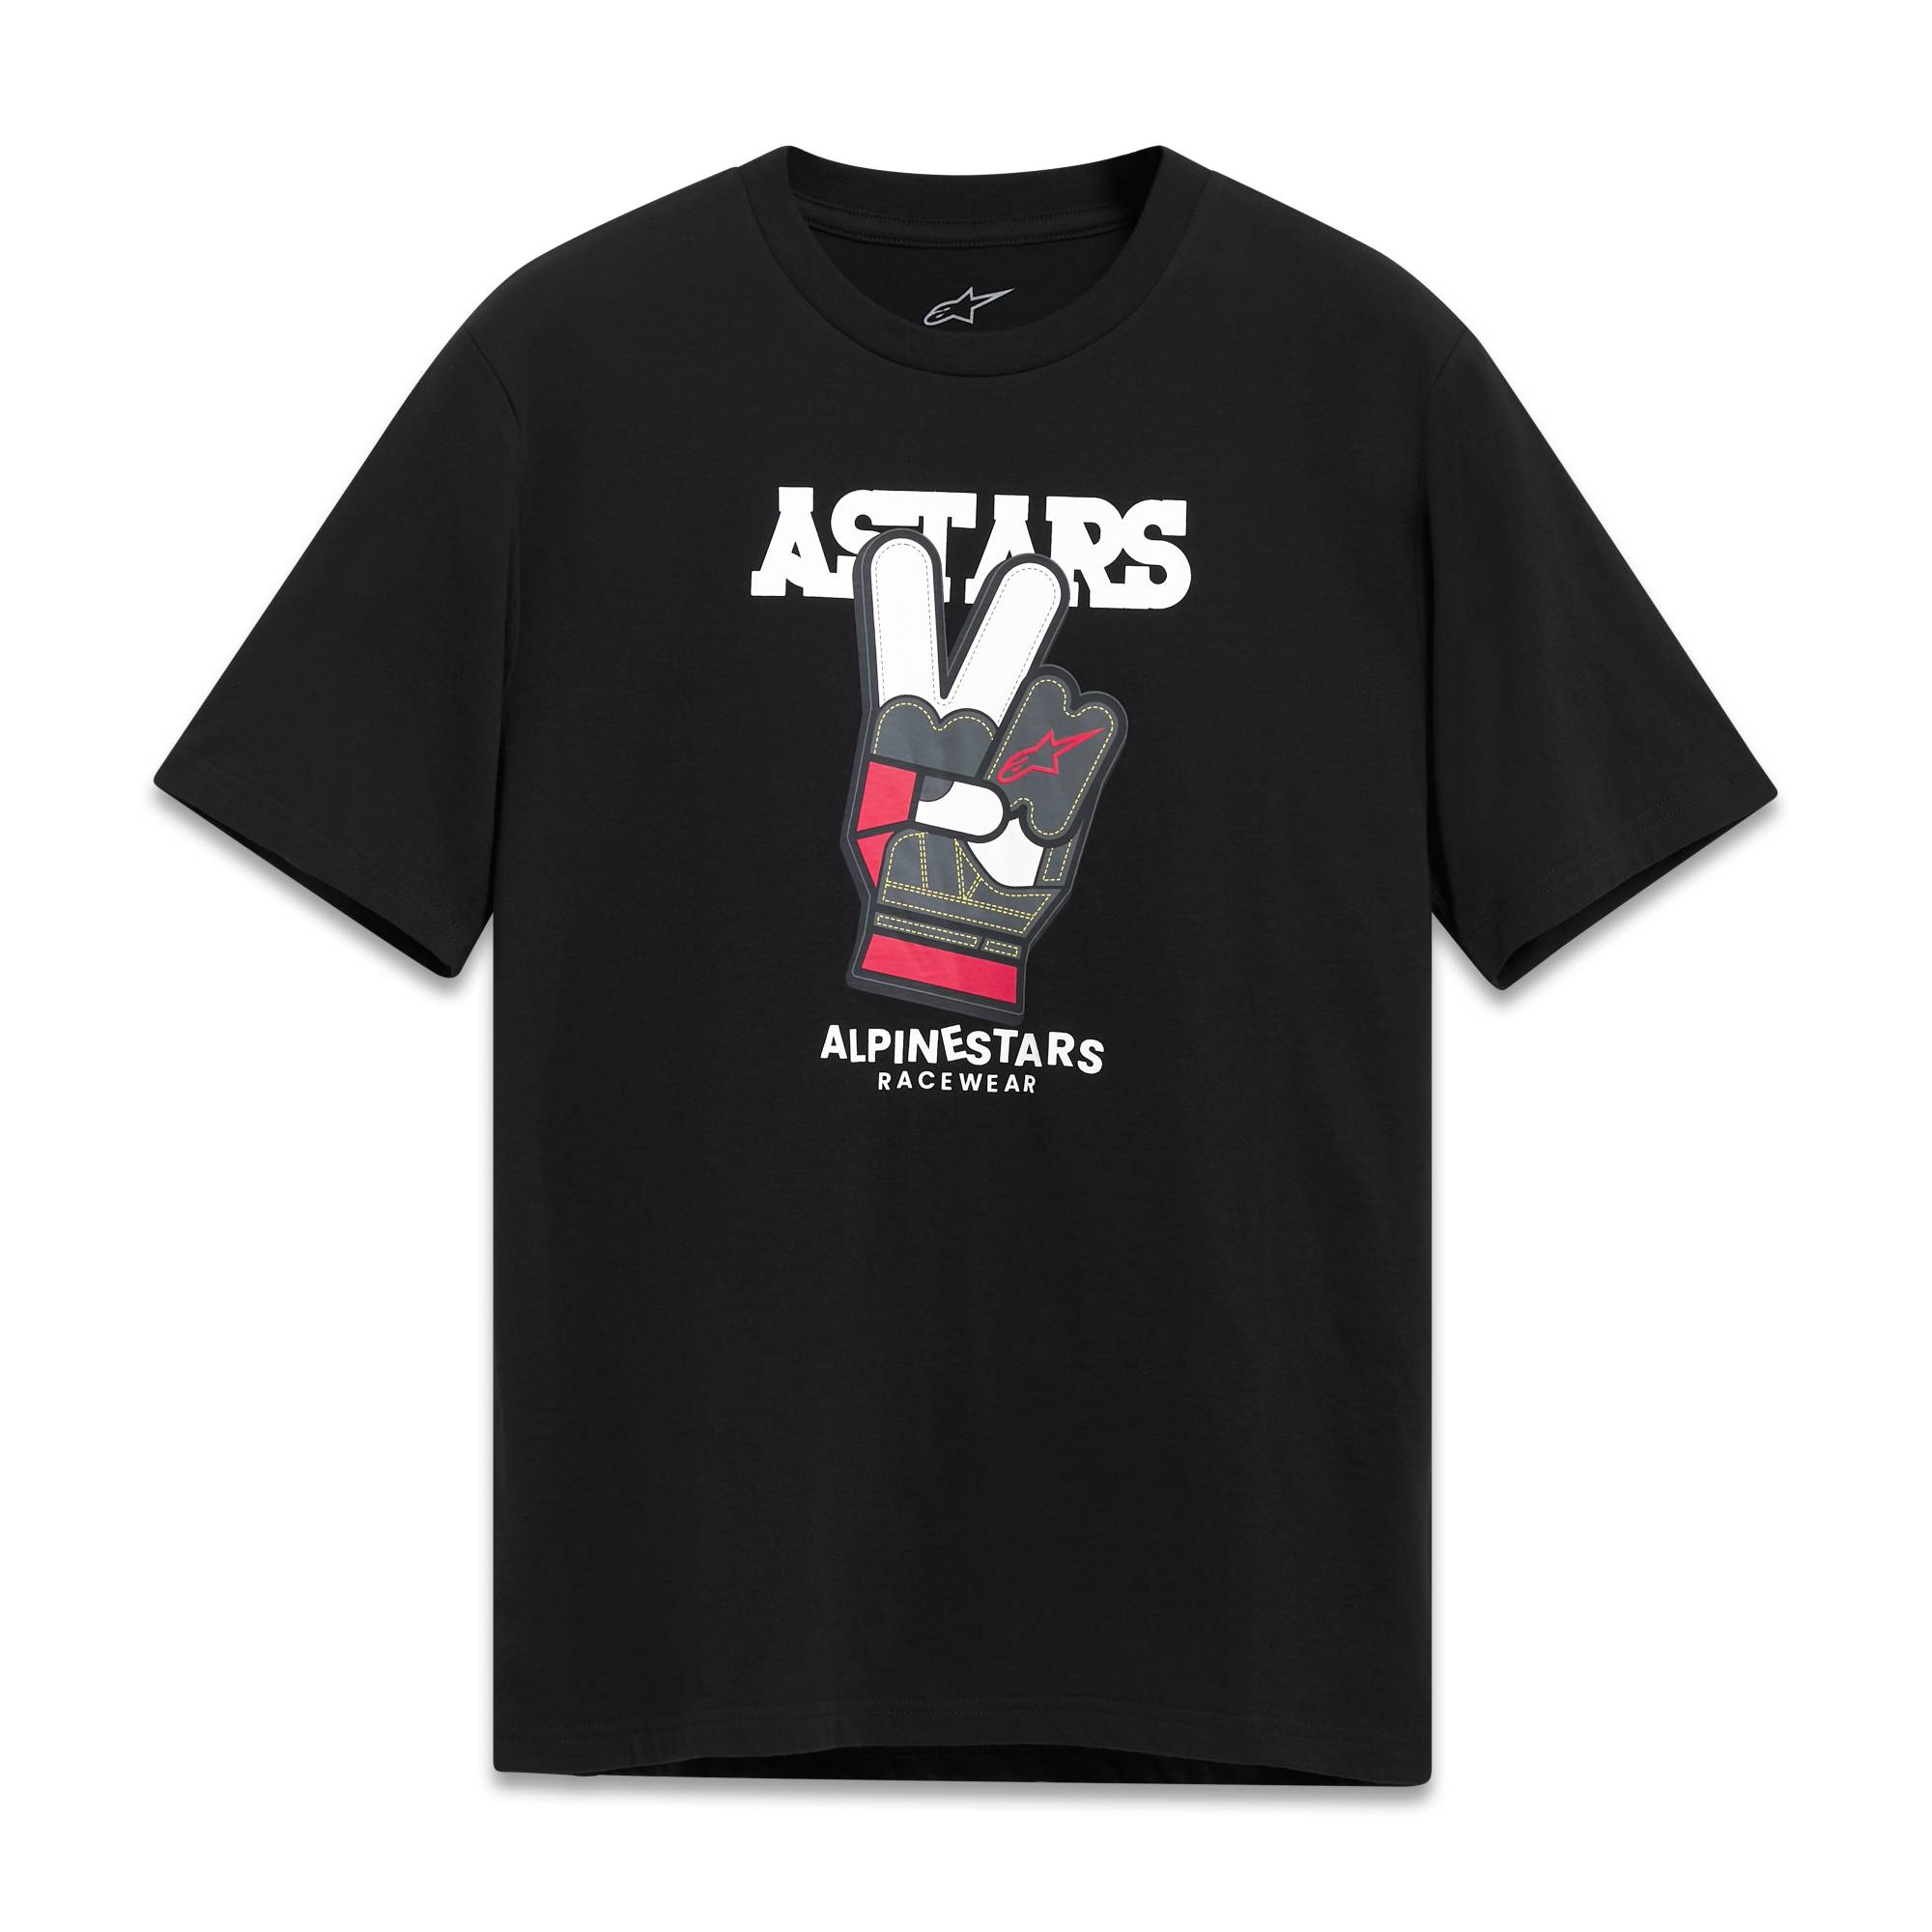 Alpinestars T-Shirt "Peaceout" - schwarz